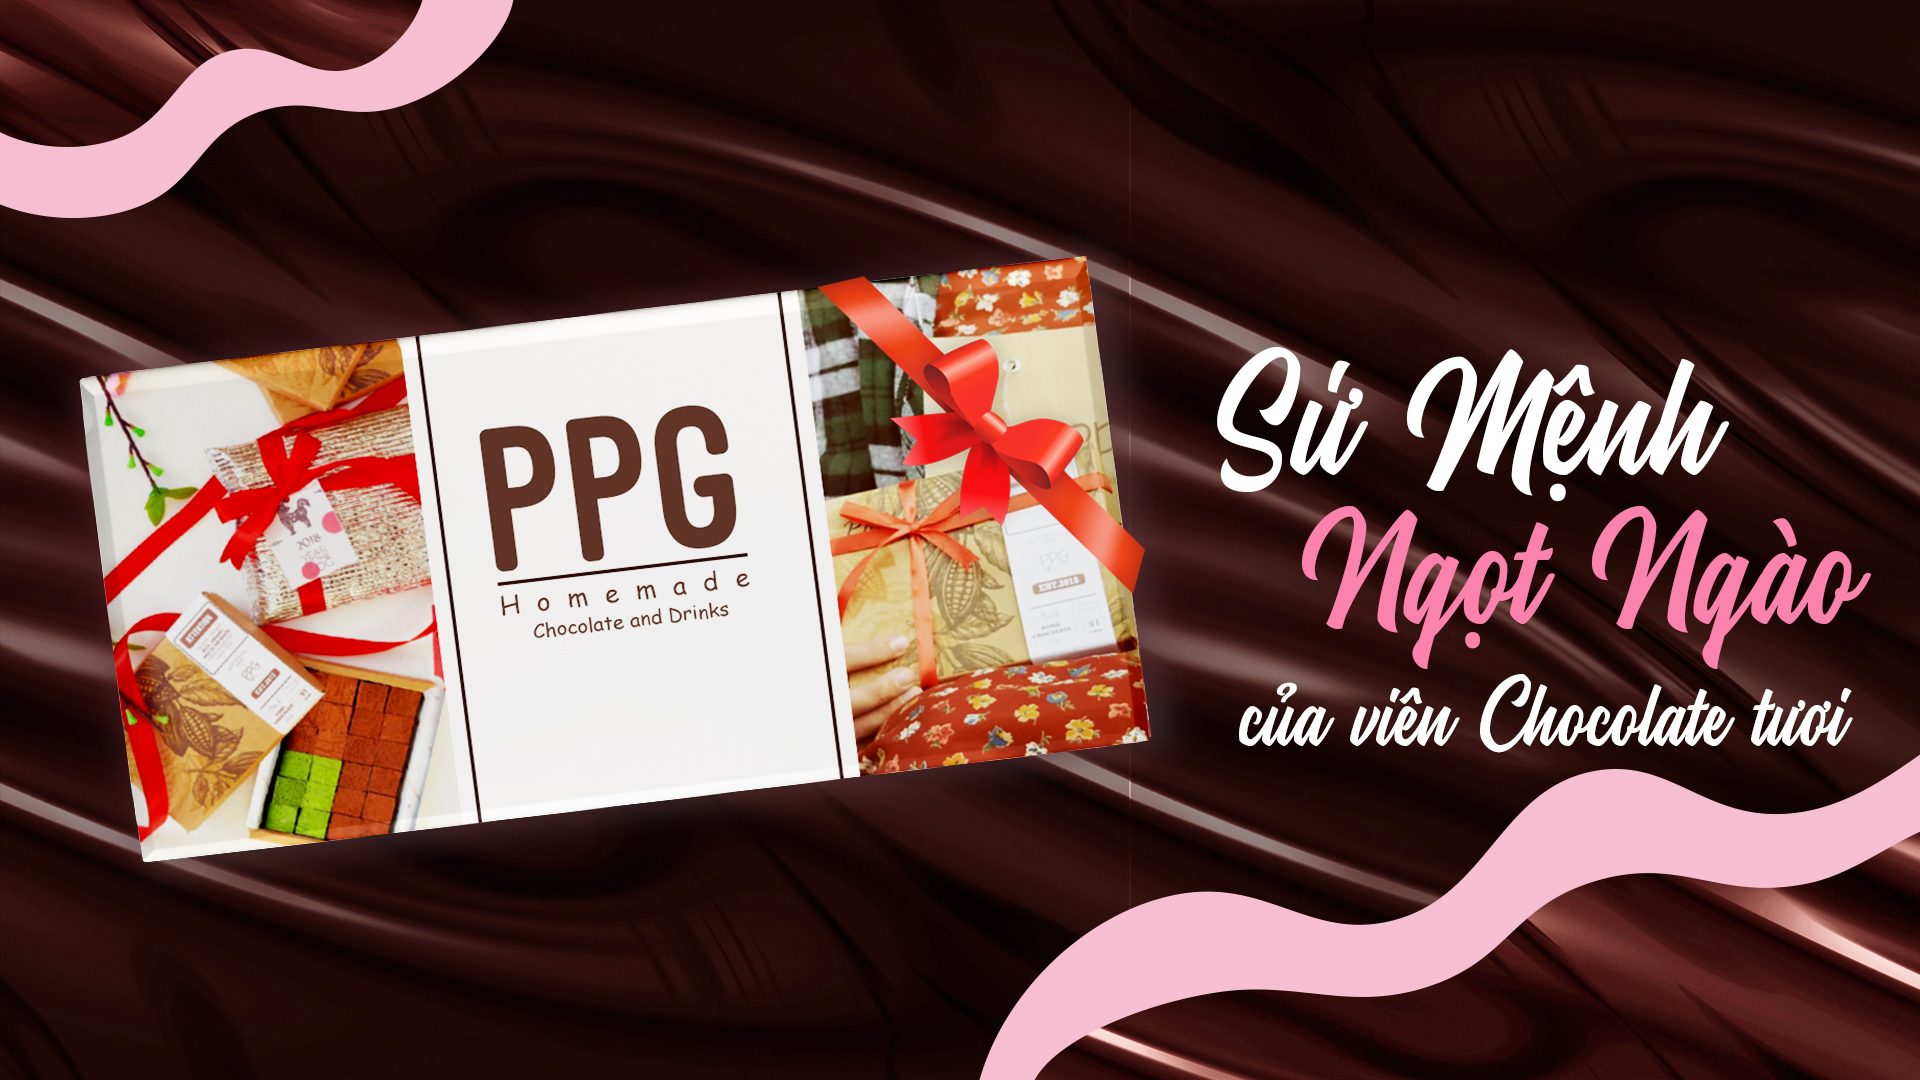 PPG Homemade Chocolate and Drinks – Sứ Mệnh Ngọt Ngào Của Viên Chocolate Tươi